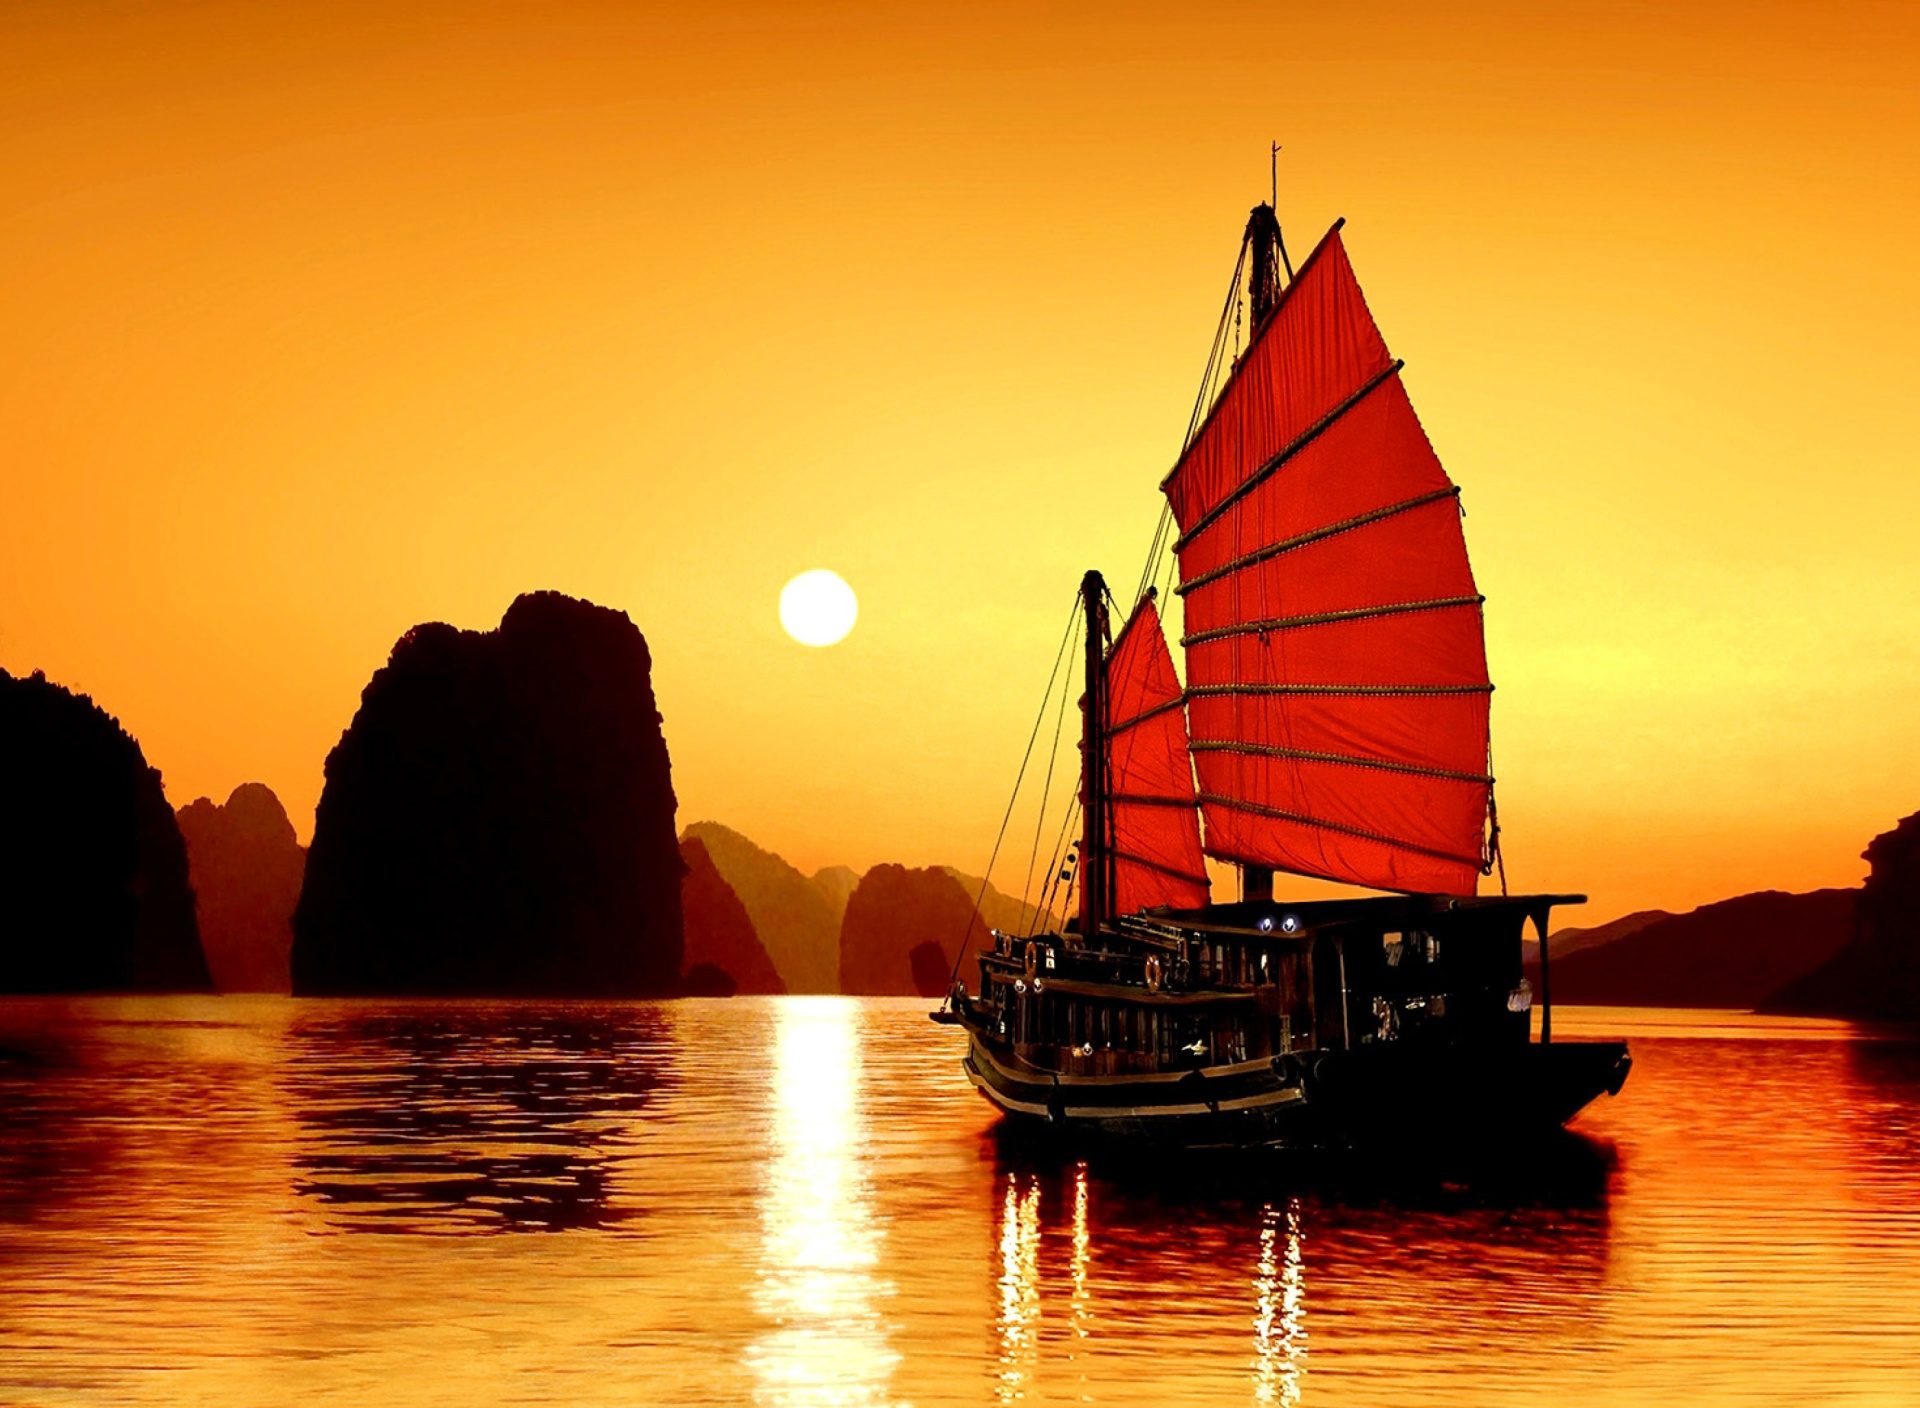 Halong Bay, Vietnama in Sunset screenshot #1 1920x1408